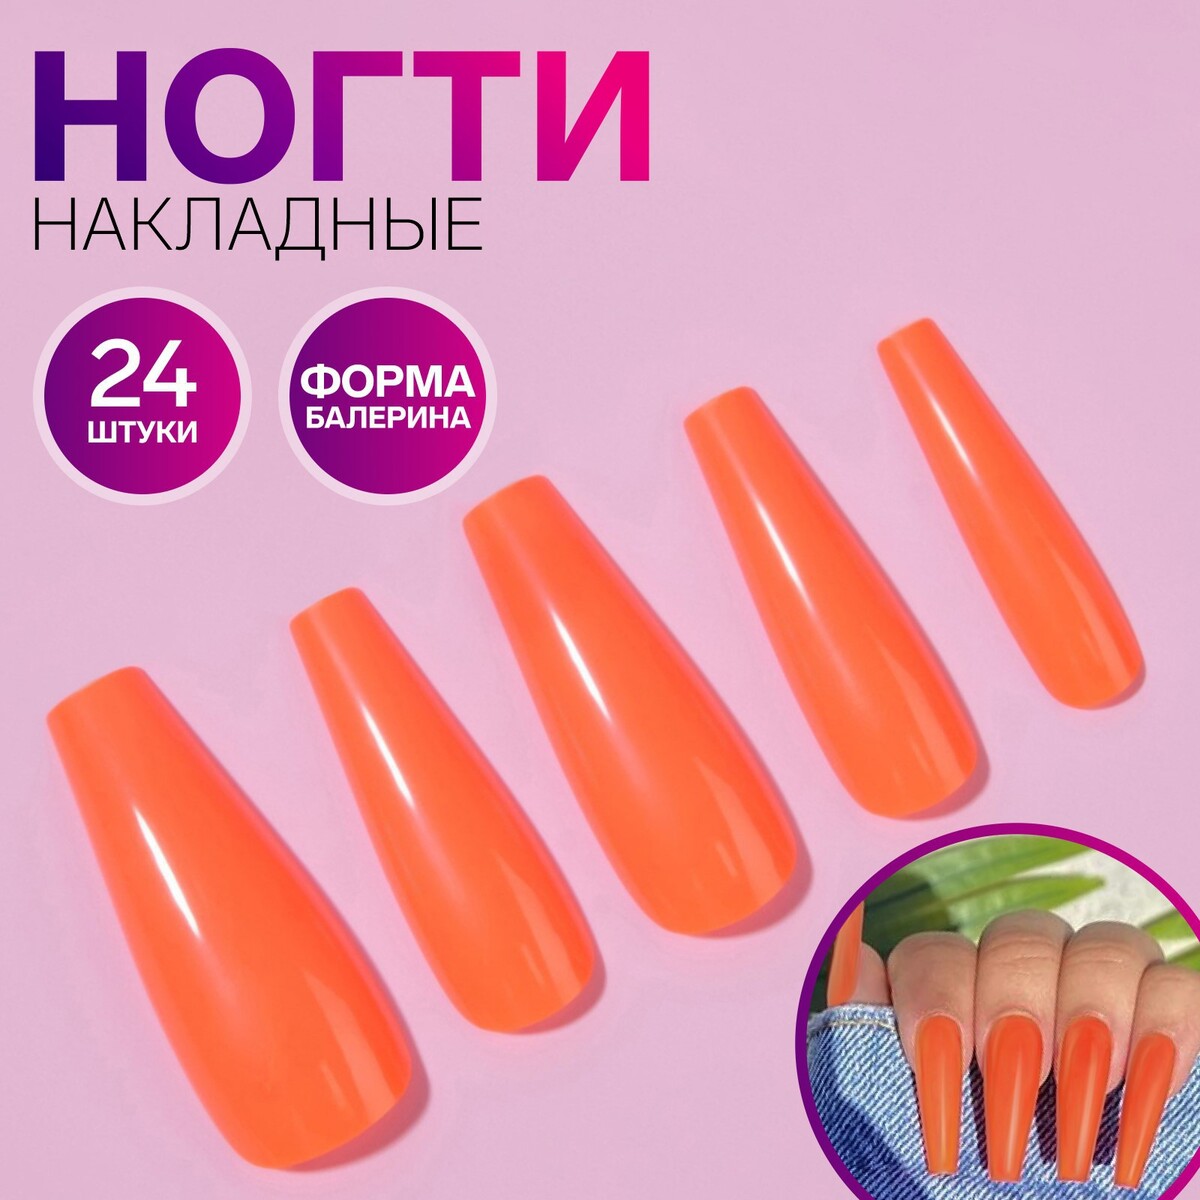 Накладные ногти, 24 шт, форма балерина, цвет неоновый оранжевый накладные ногти 24 шт форма балерина неоновый желтый